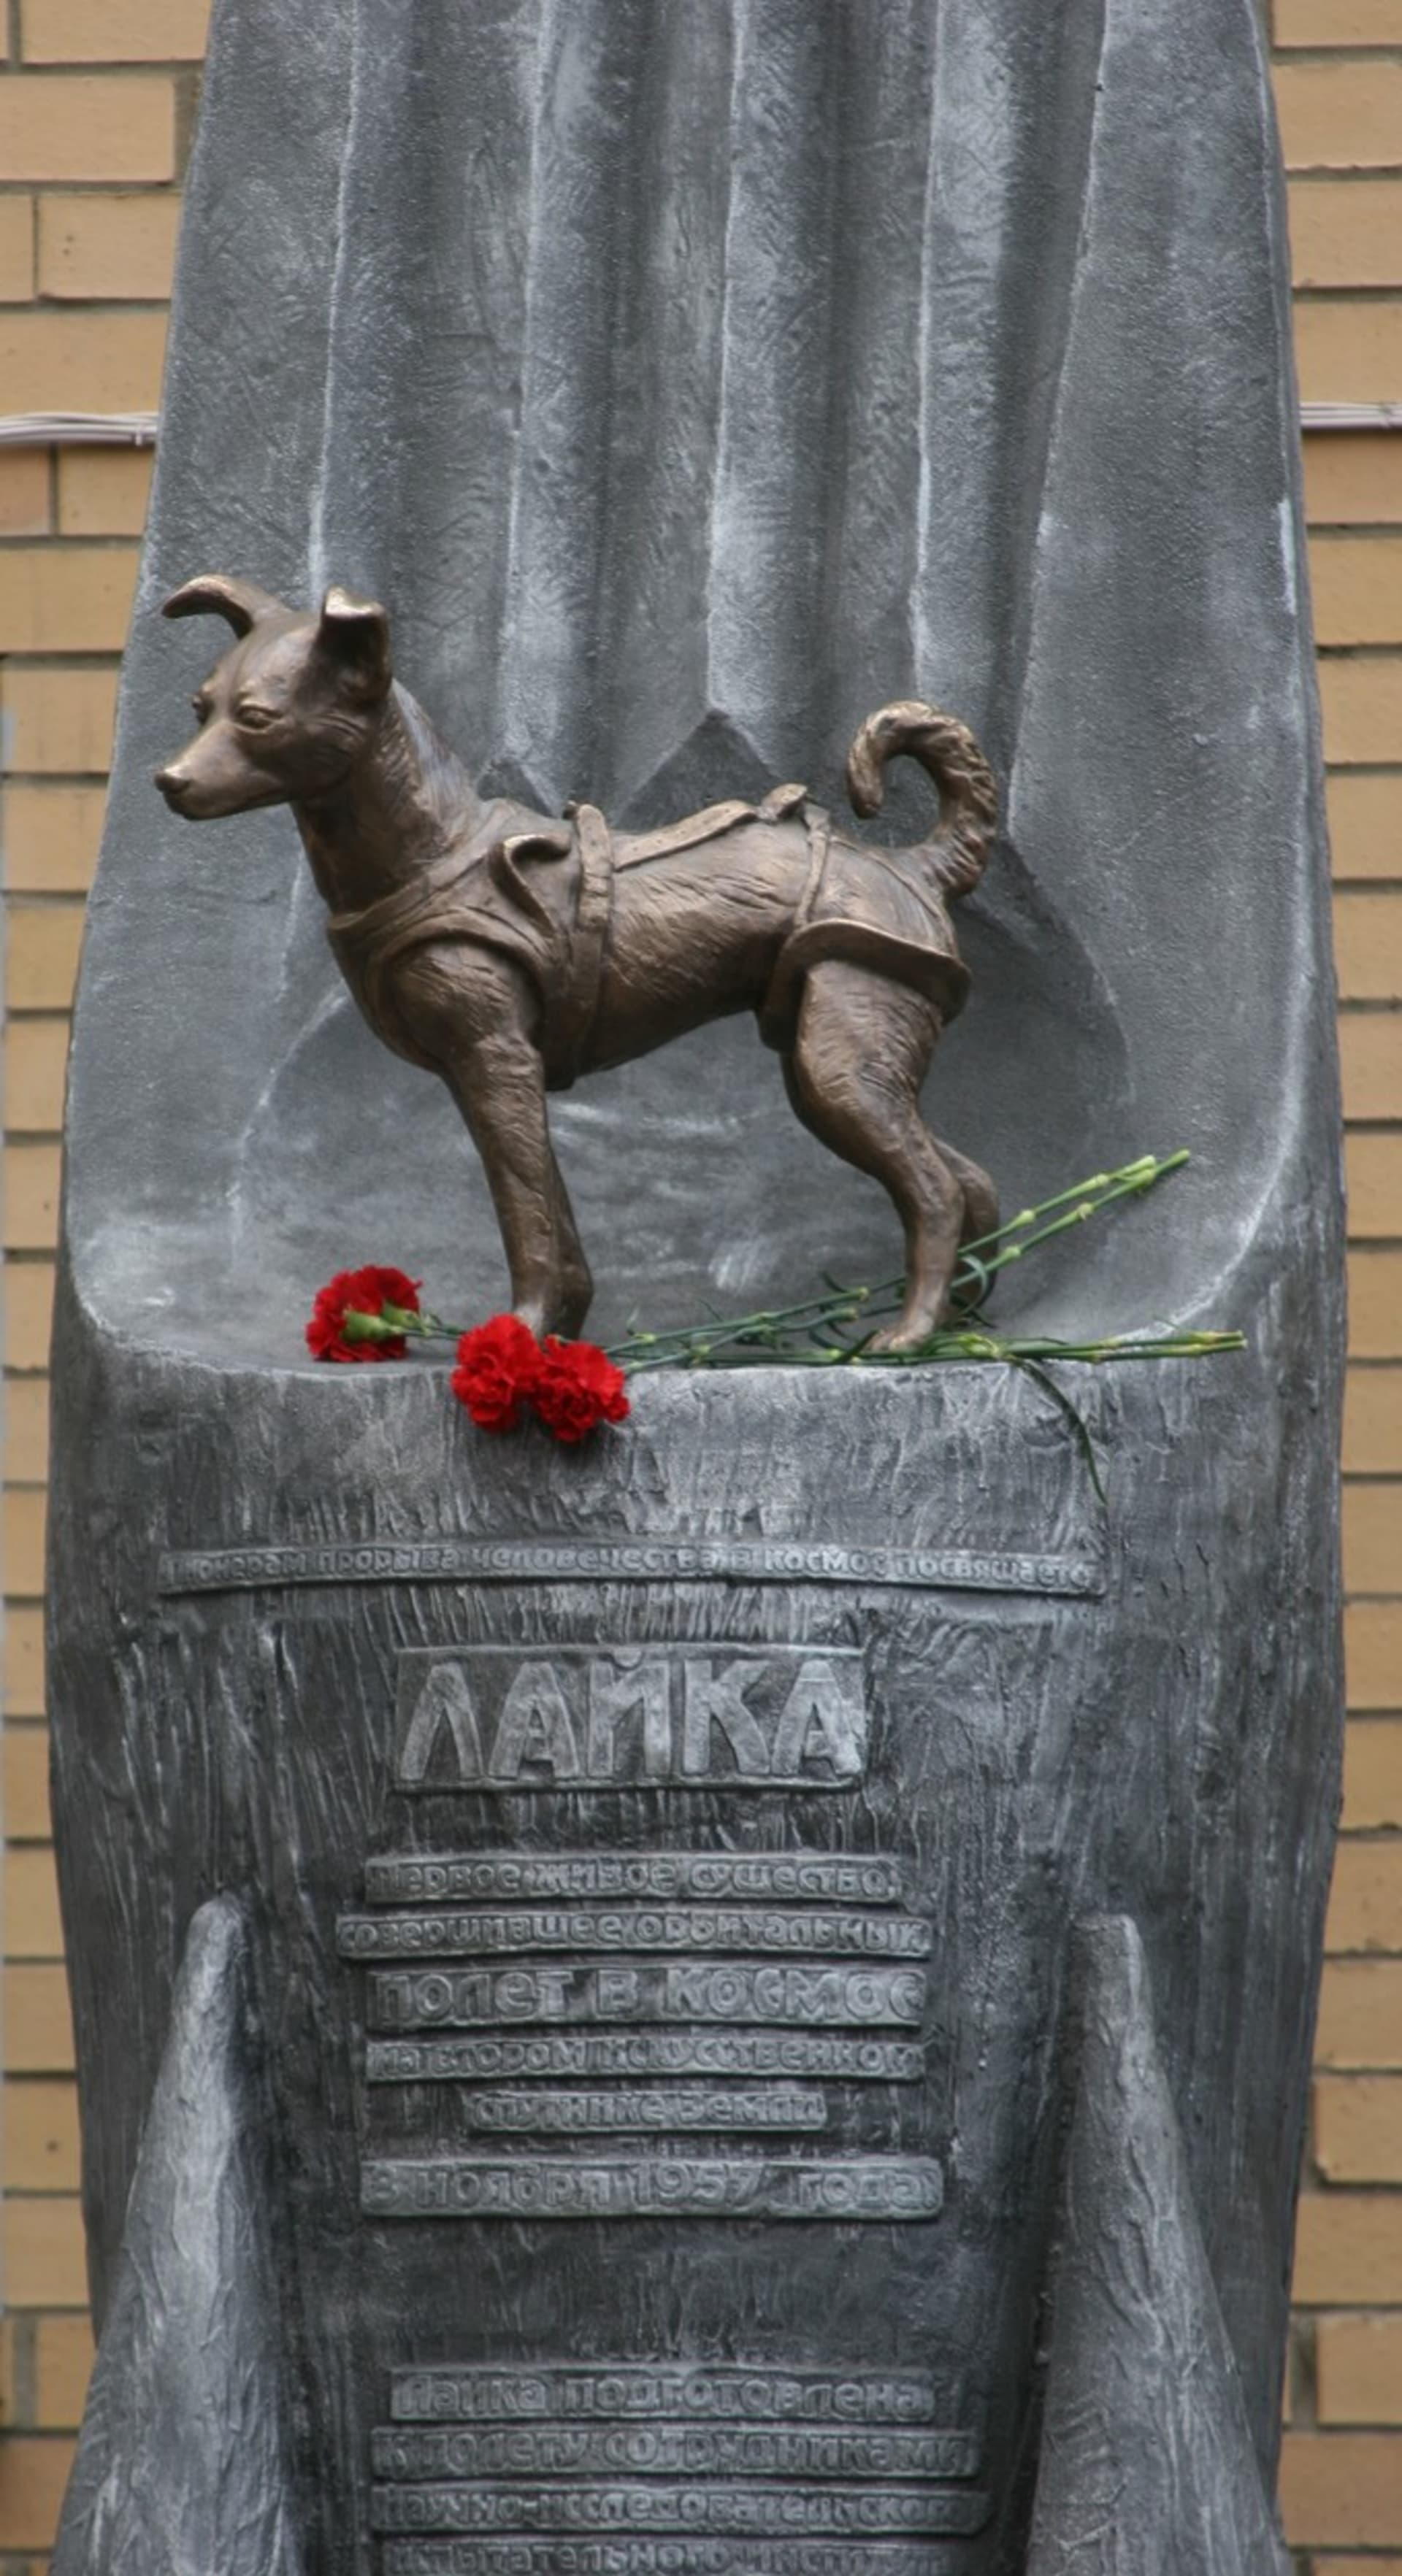 Pomník Lajky v Moskvě